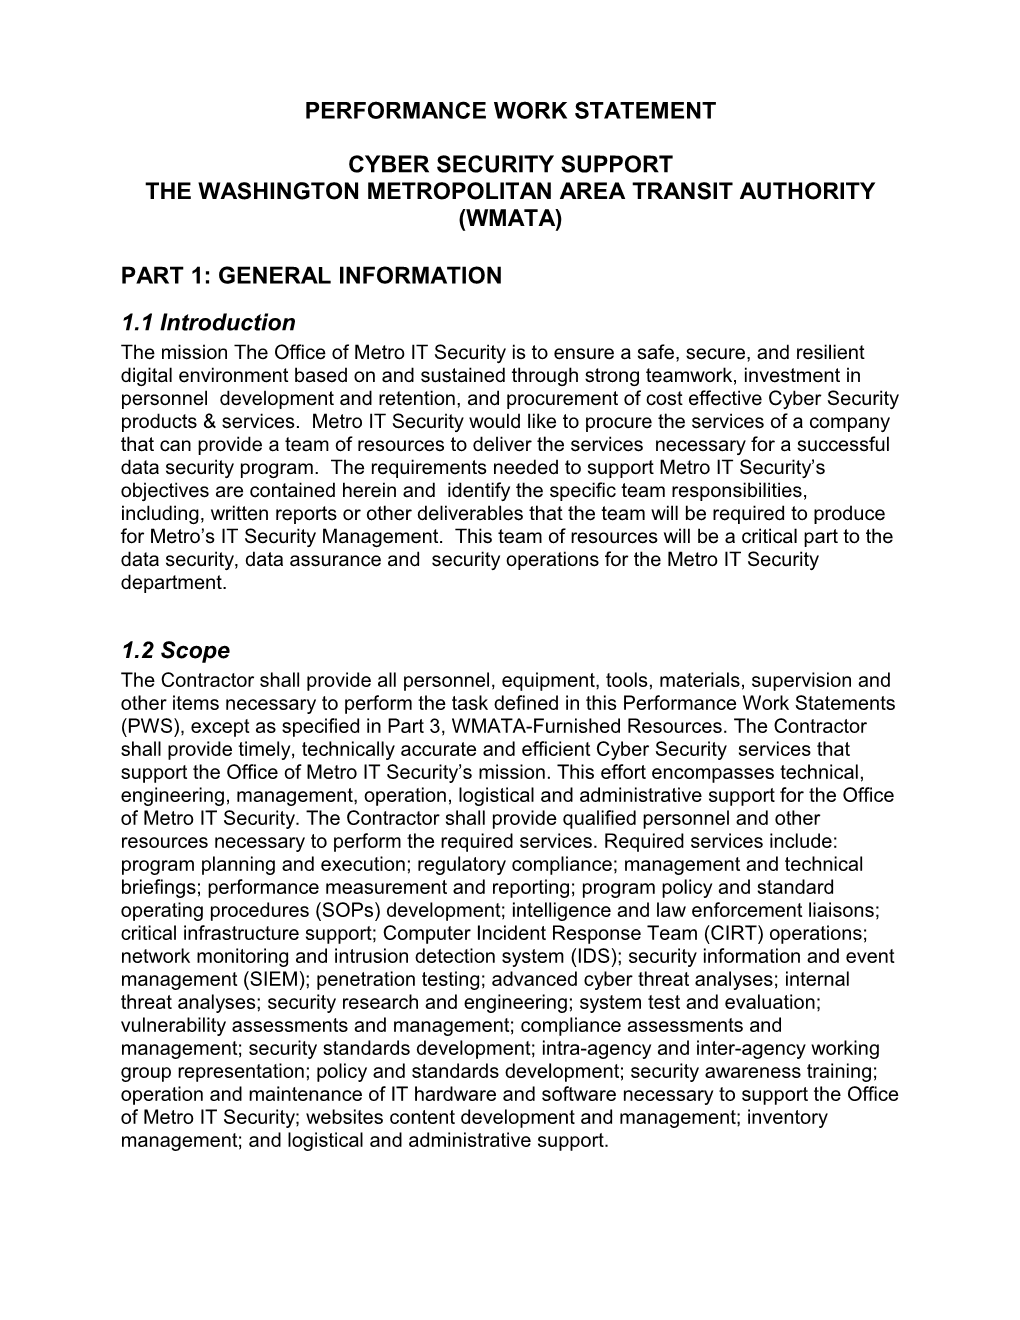 The Washington Metropolitan Area Transit Authority (Wmata)